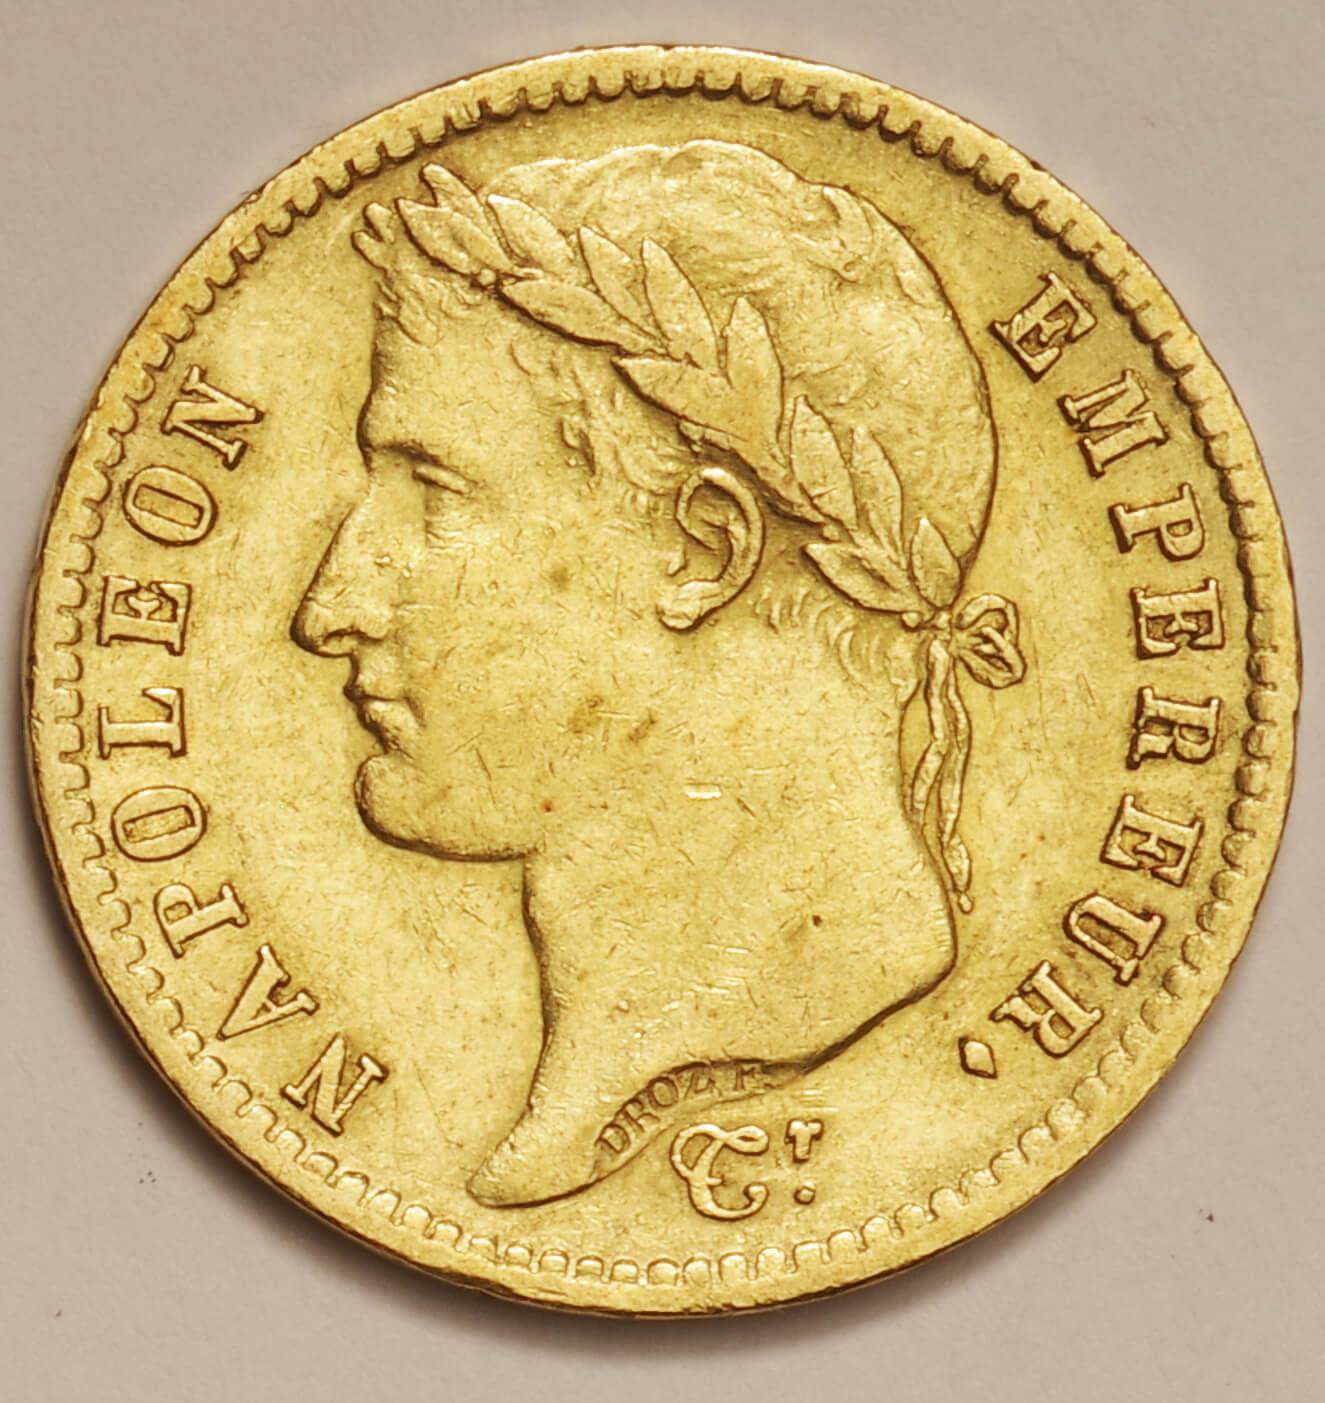 ナポレオン金貨 20フラン 1867年 - コレクション